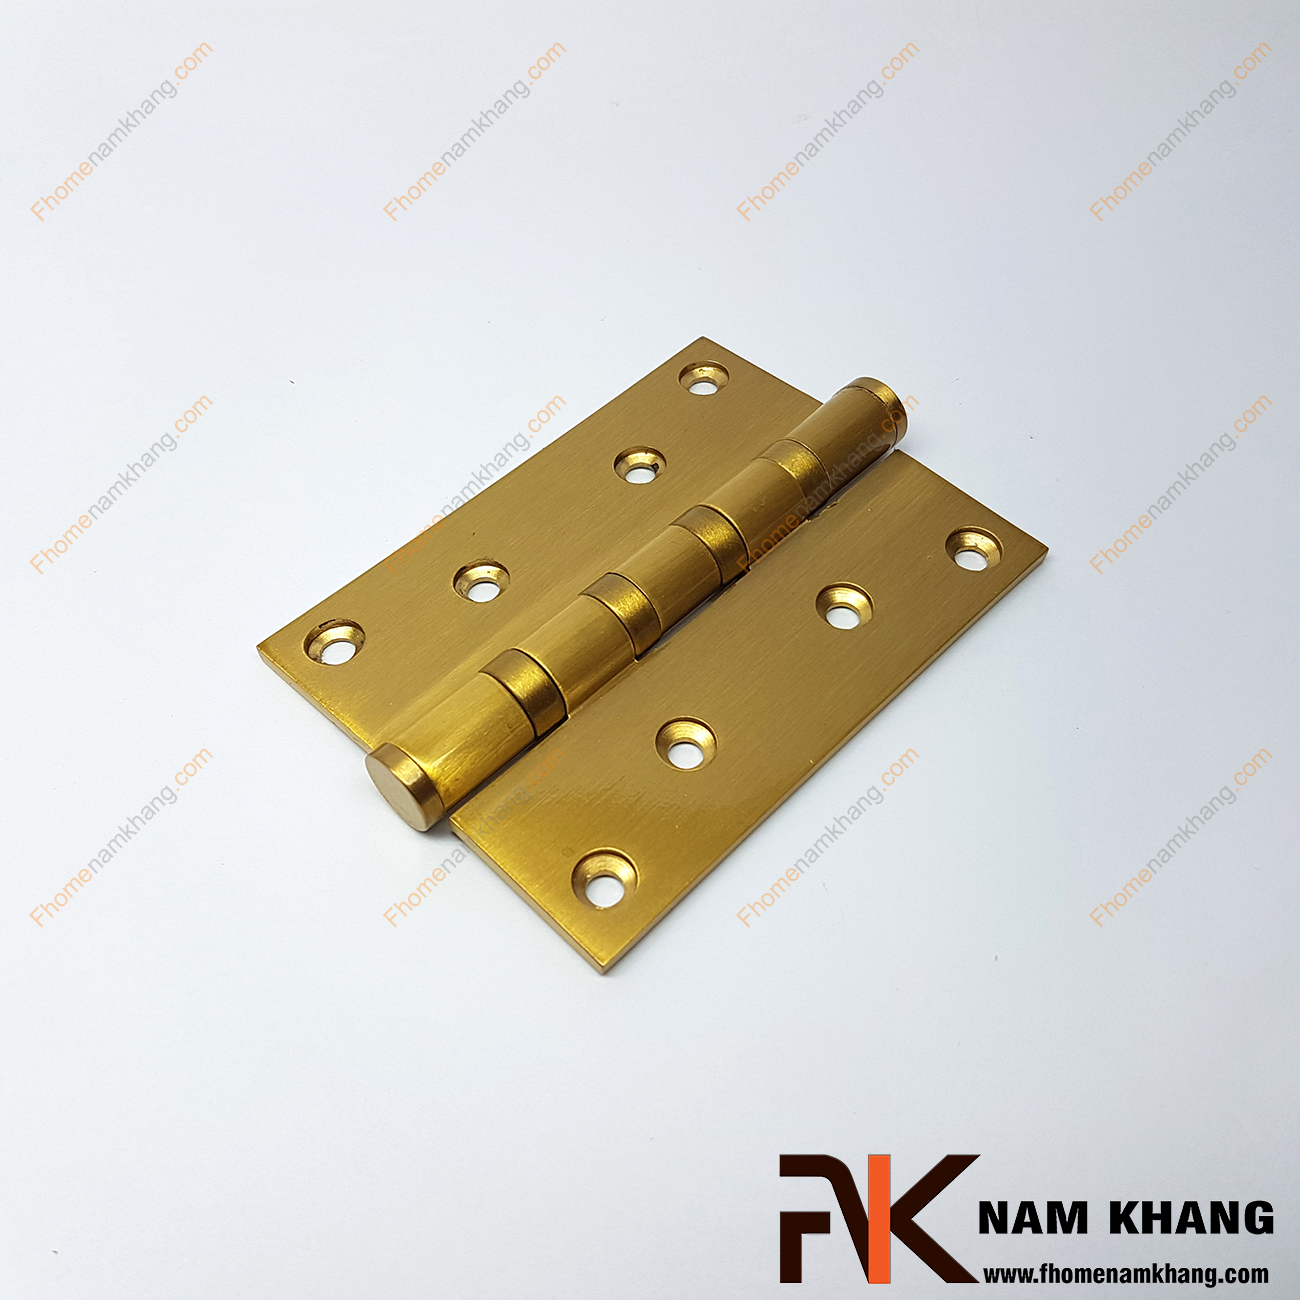 Bản lề cửa dạng trơn bằng đồng cao cấp NK308-13DO là sản phẩm đóng vai trò rất quan trọng trong việc nâng cao tuổi thọ cho các cánh cửa.